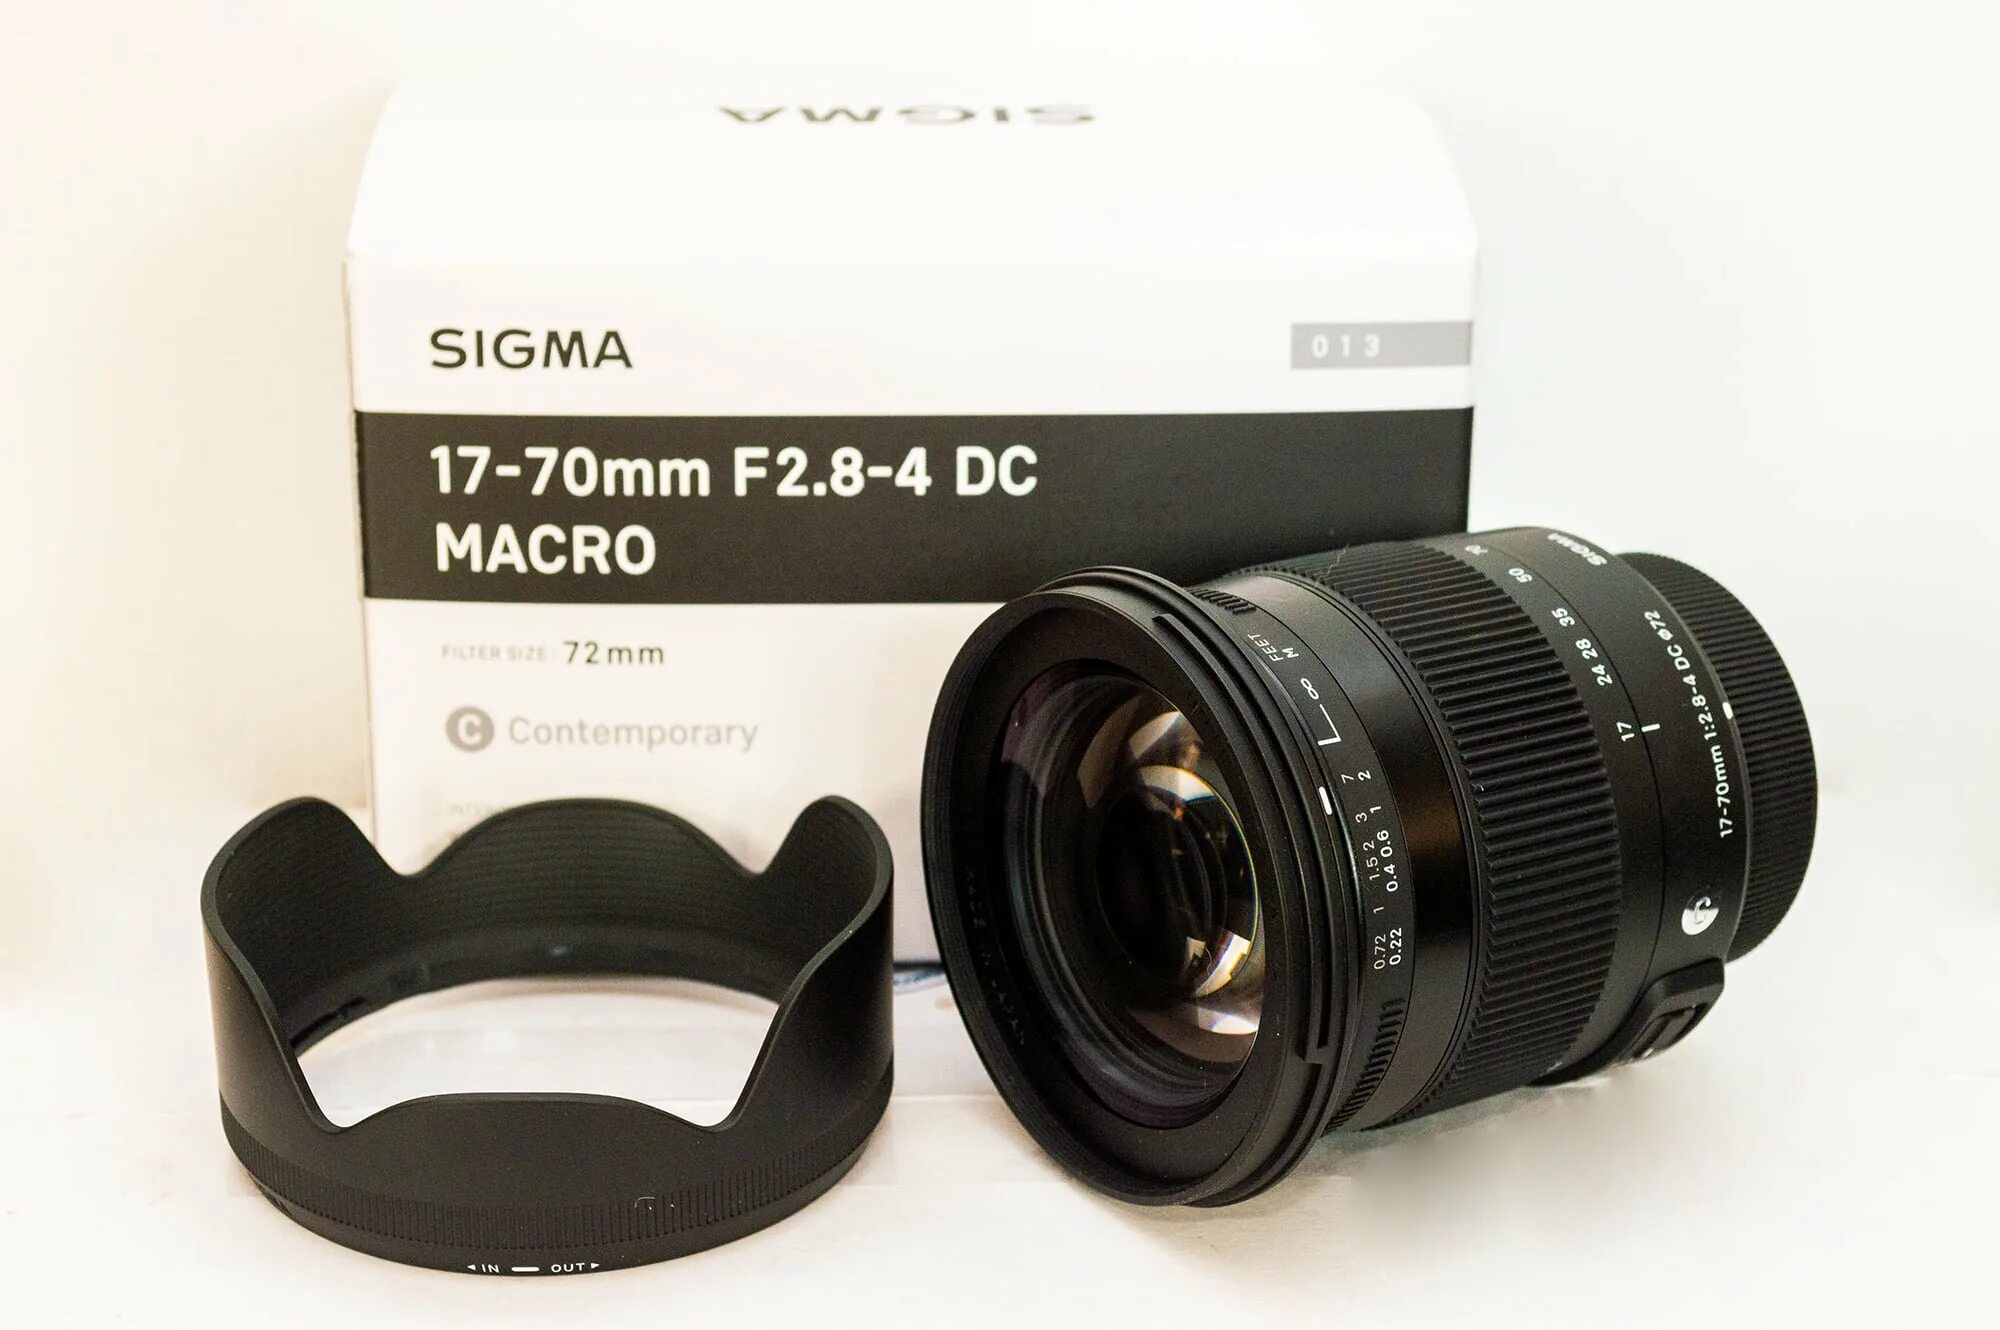 Sigma af 17-70mm f/2.8-4 DC macro os HSM Nikon f. Sigma af 17-70mm f/2.8-4 DC macro os HSM Canon EF-S. Sigma 17-70mm f/2.8-4 DC macro. Sigma 17 70 Canon.